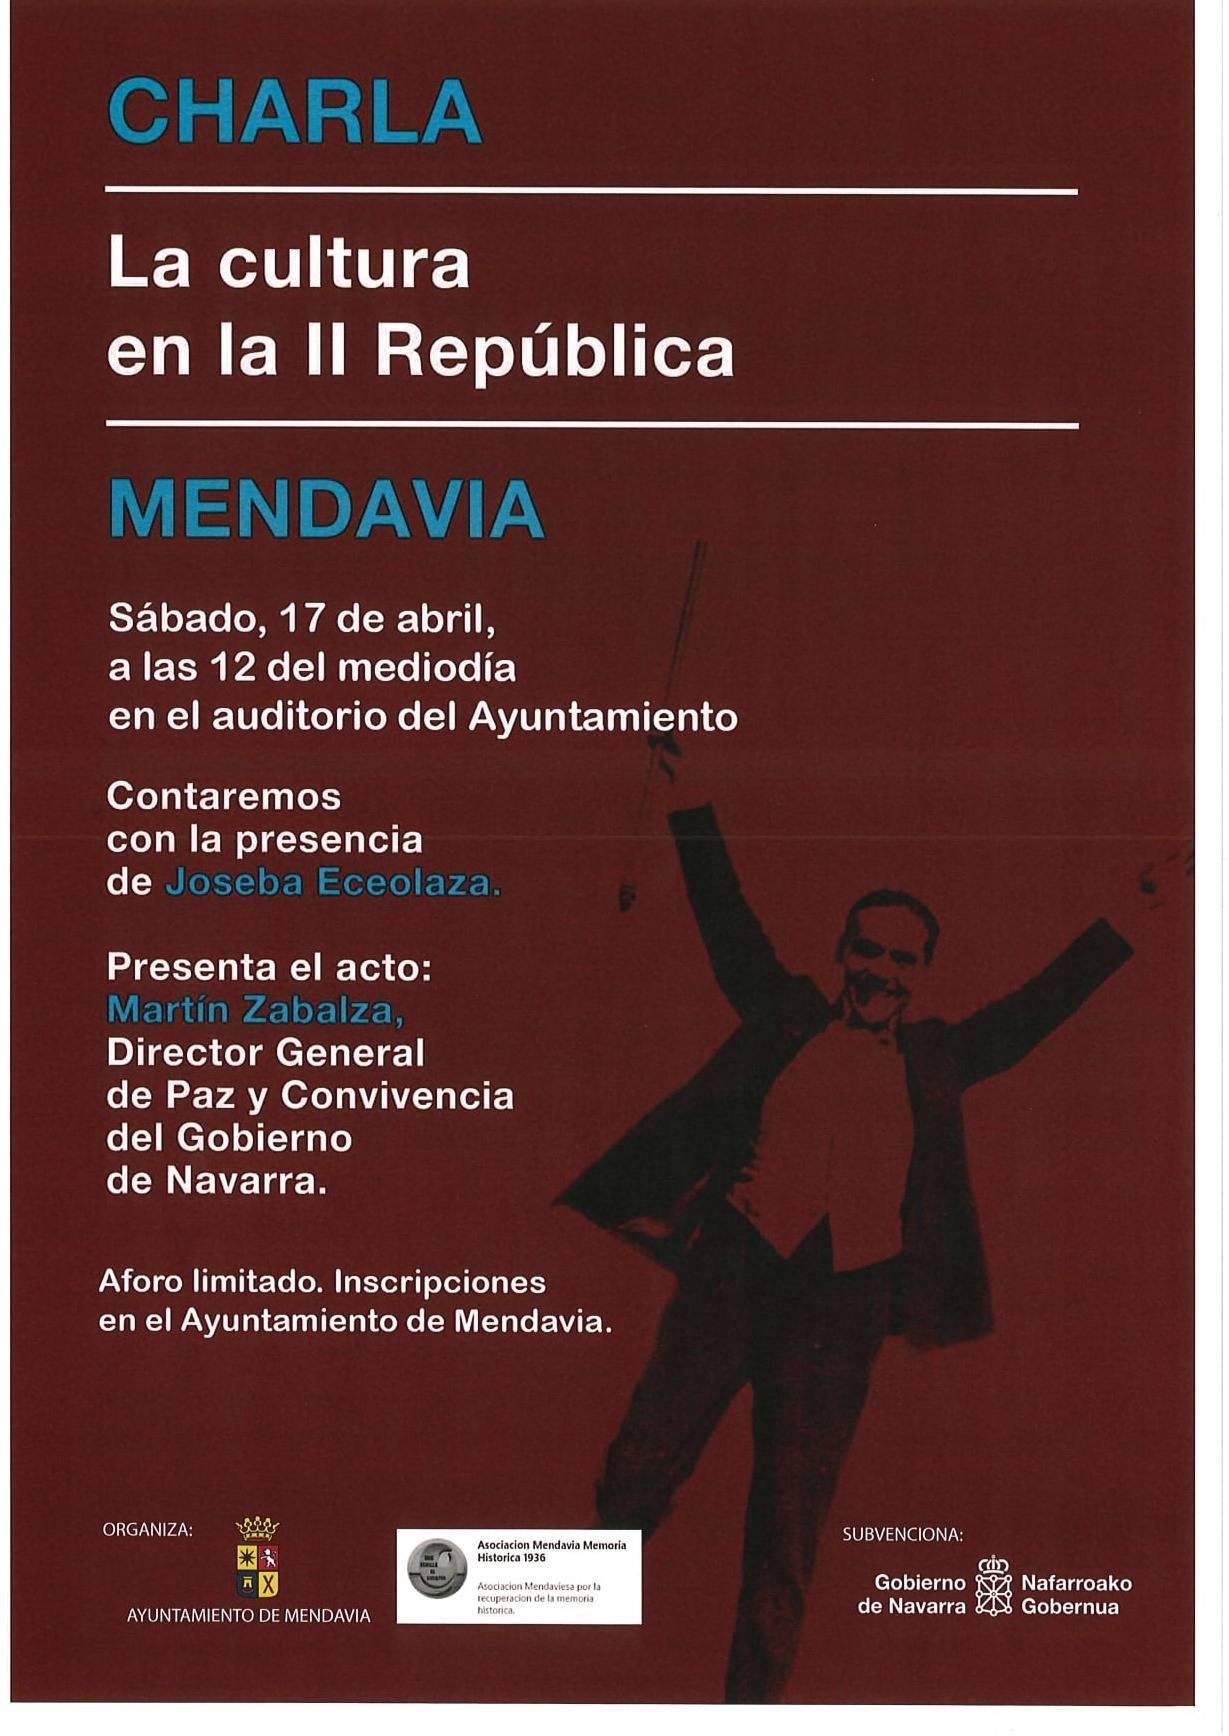 La cultura en la II República (2021) - Mendavia (Navarra)